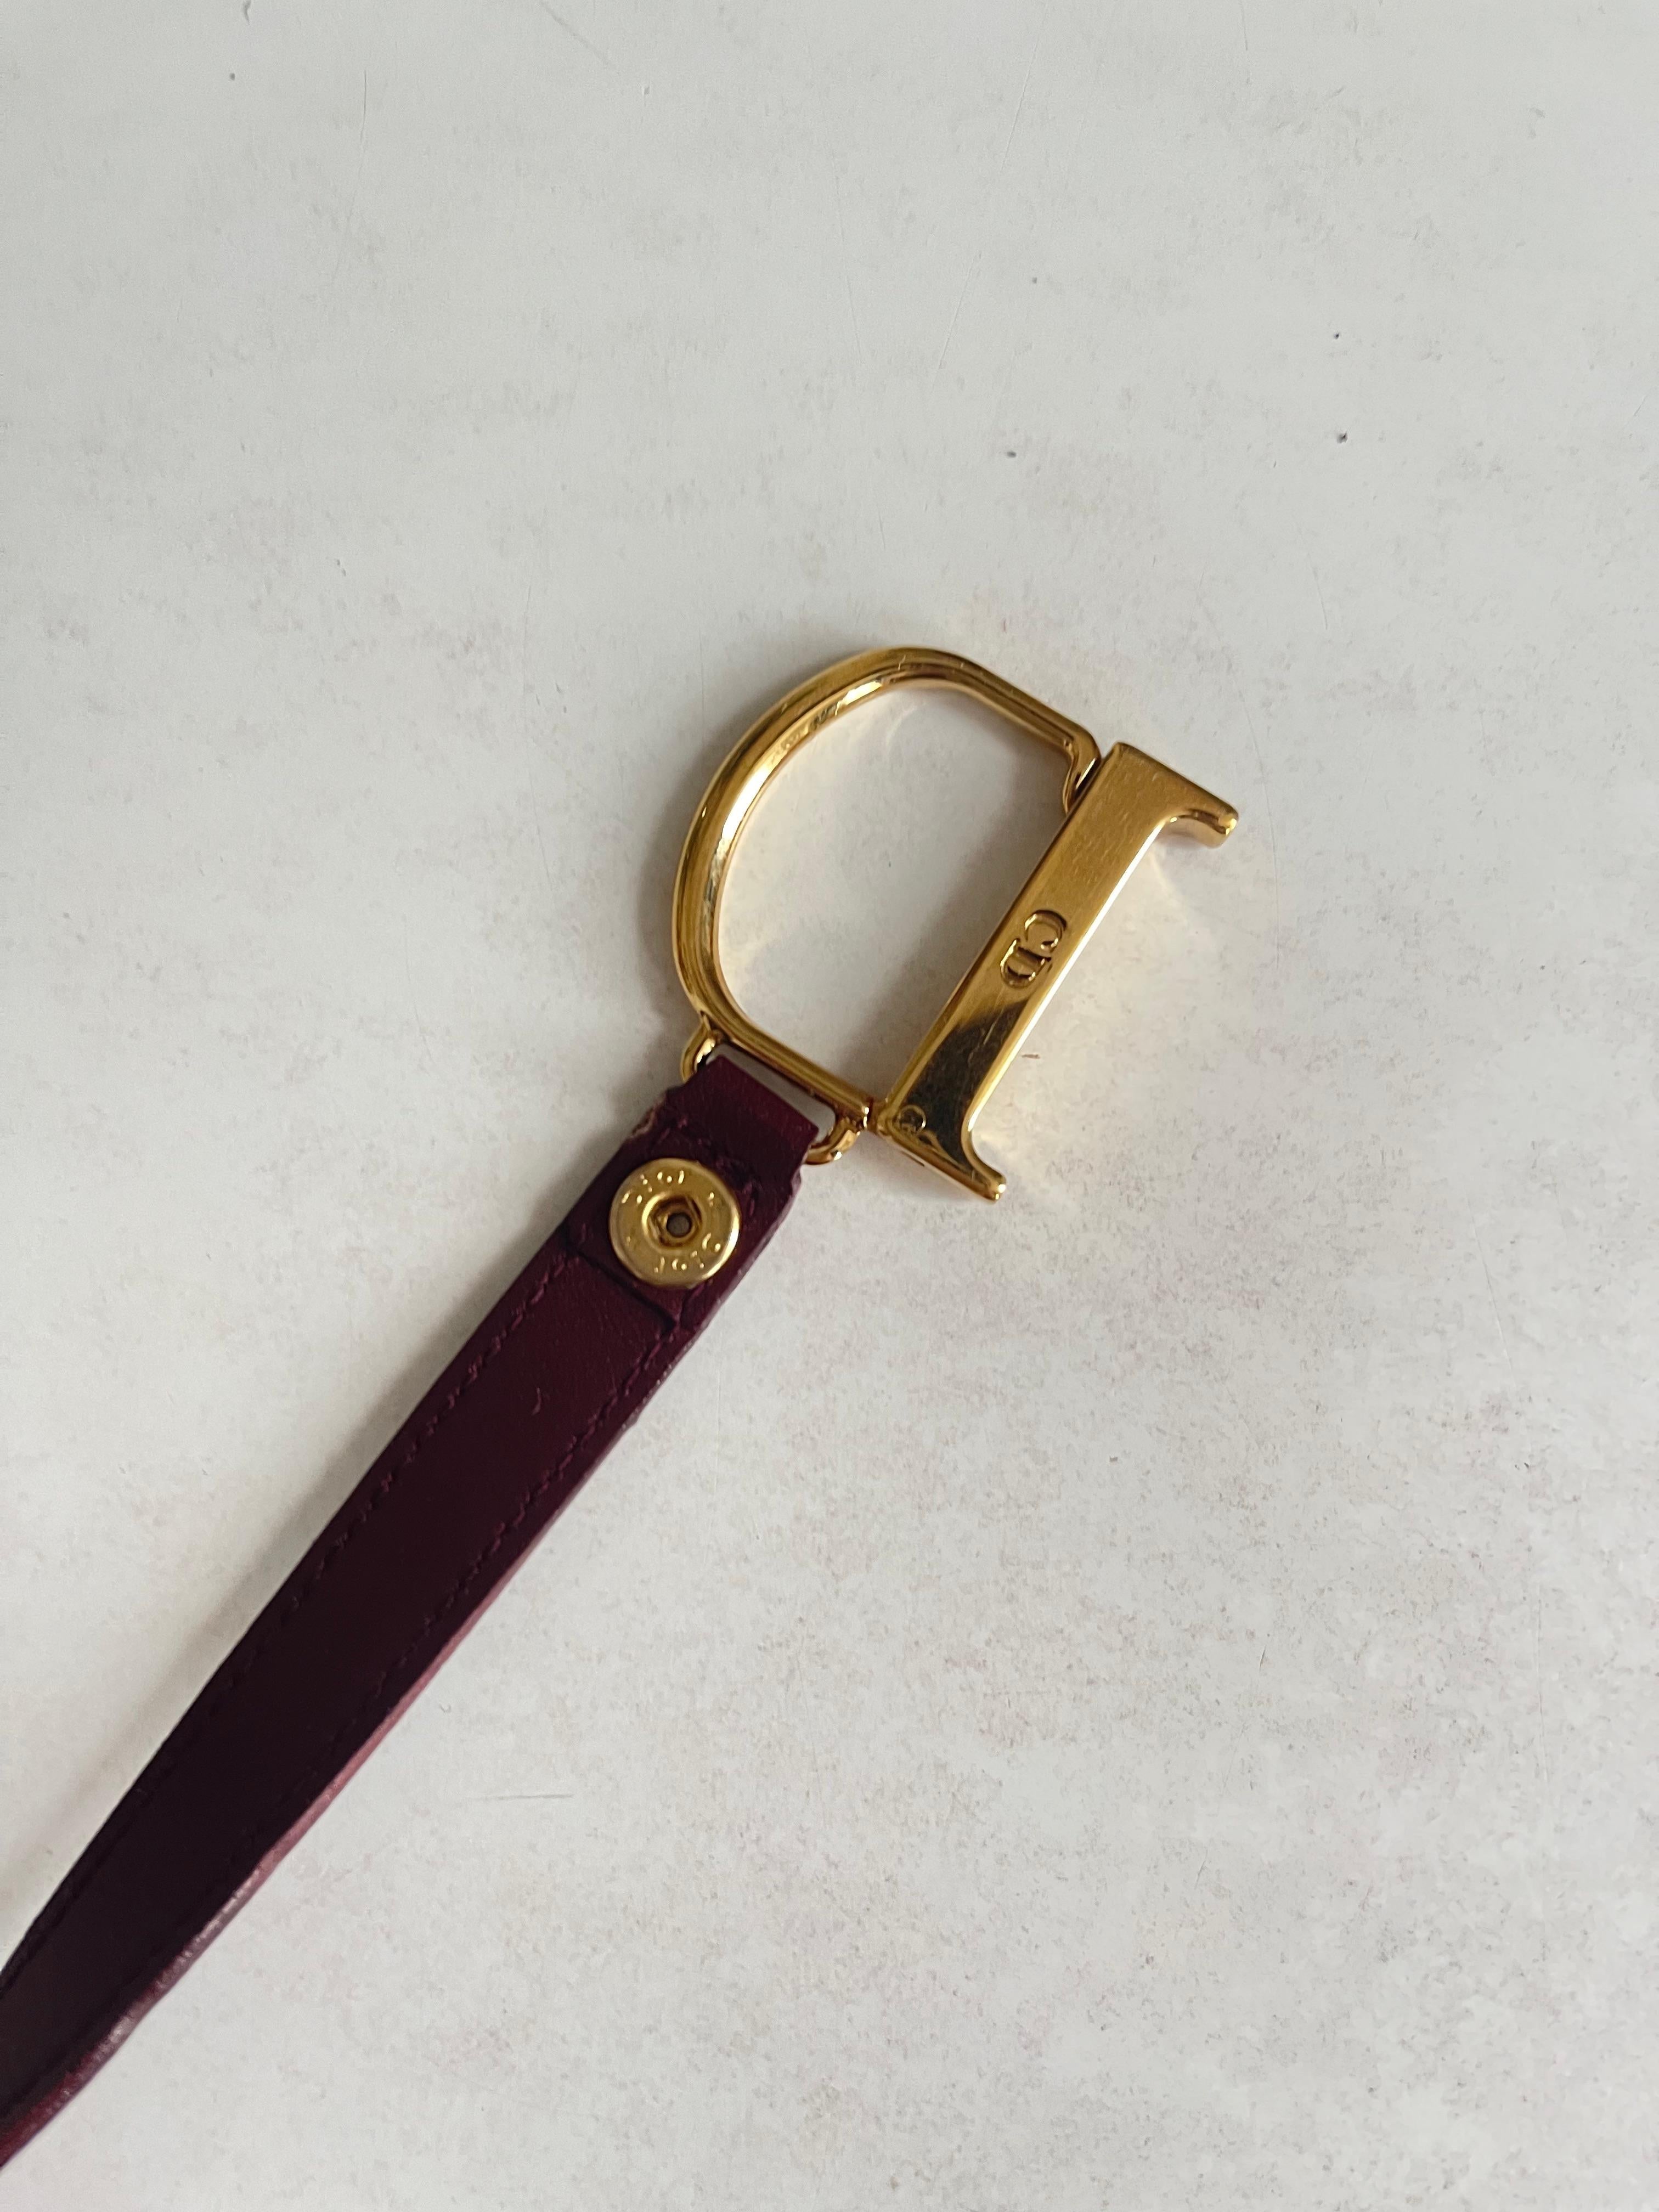 Plongez dans l'univers du créateur visionnaire de Dior, John Galliano, grâce à ce superbe porte-monnaie Saddle de la collection emblématique de 2002. 

Conçu pour captiver et inspirer, cet accessoire compact incarne l'esprit audacieux et